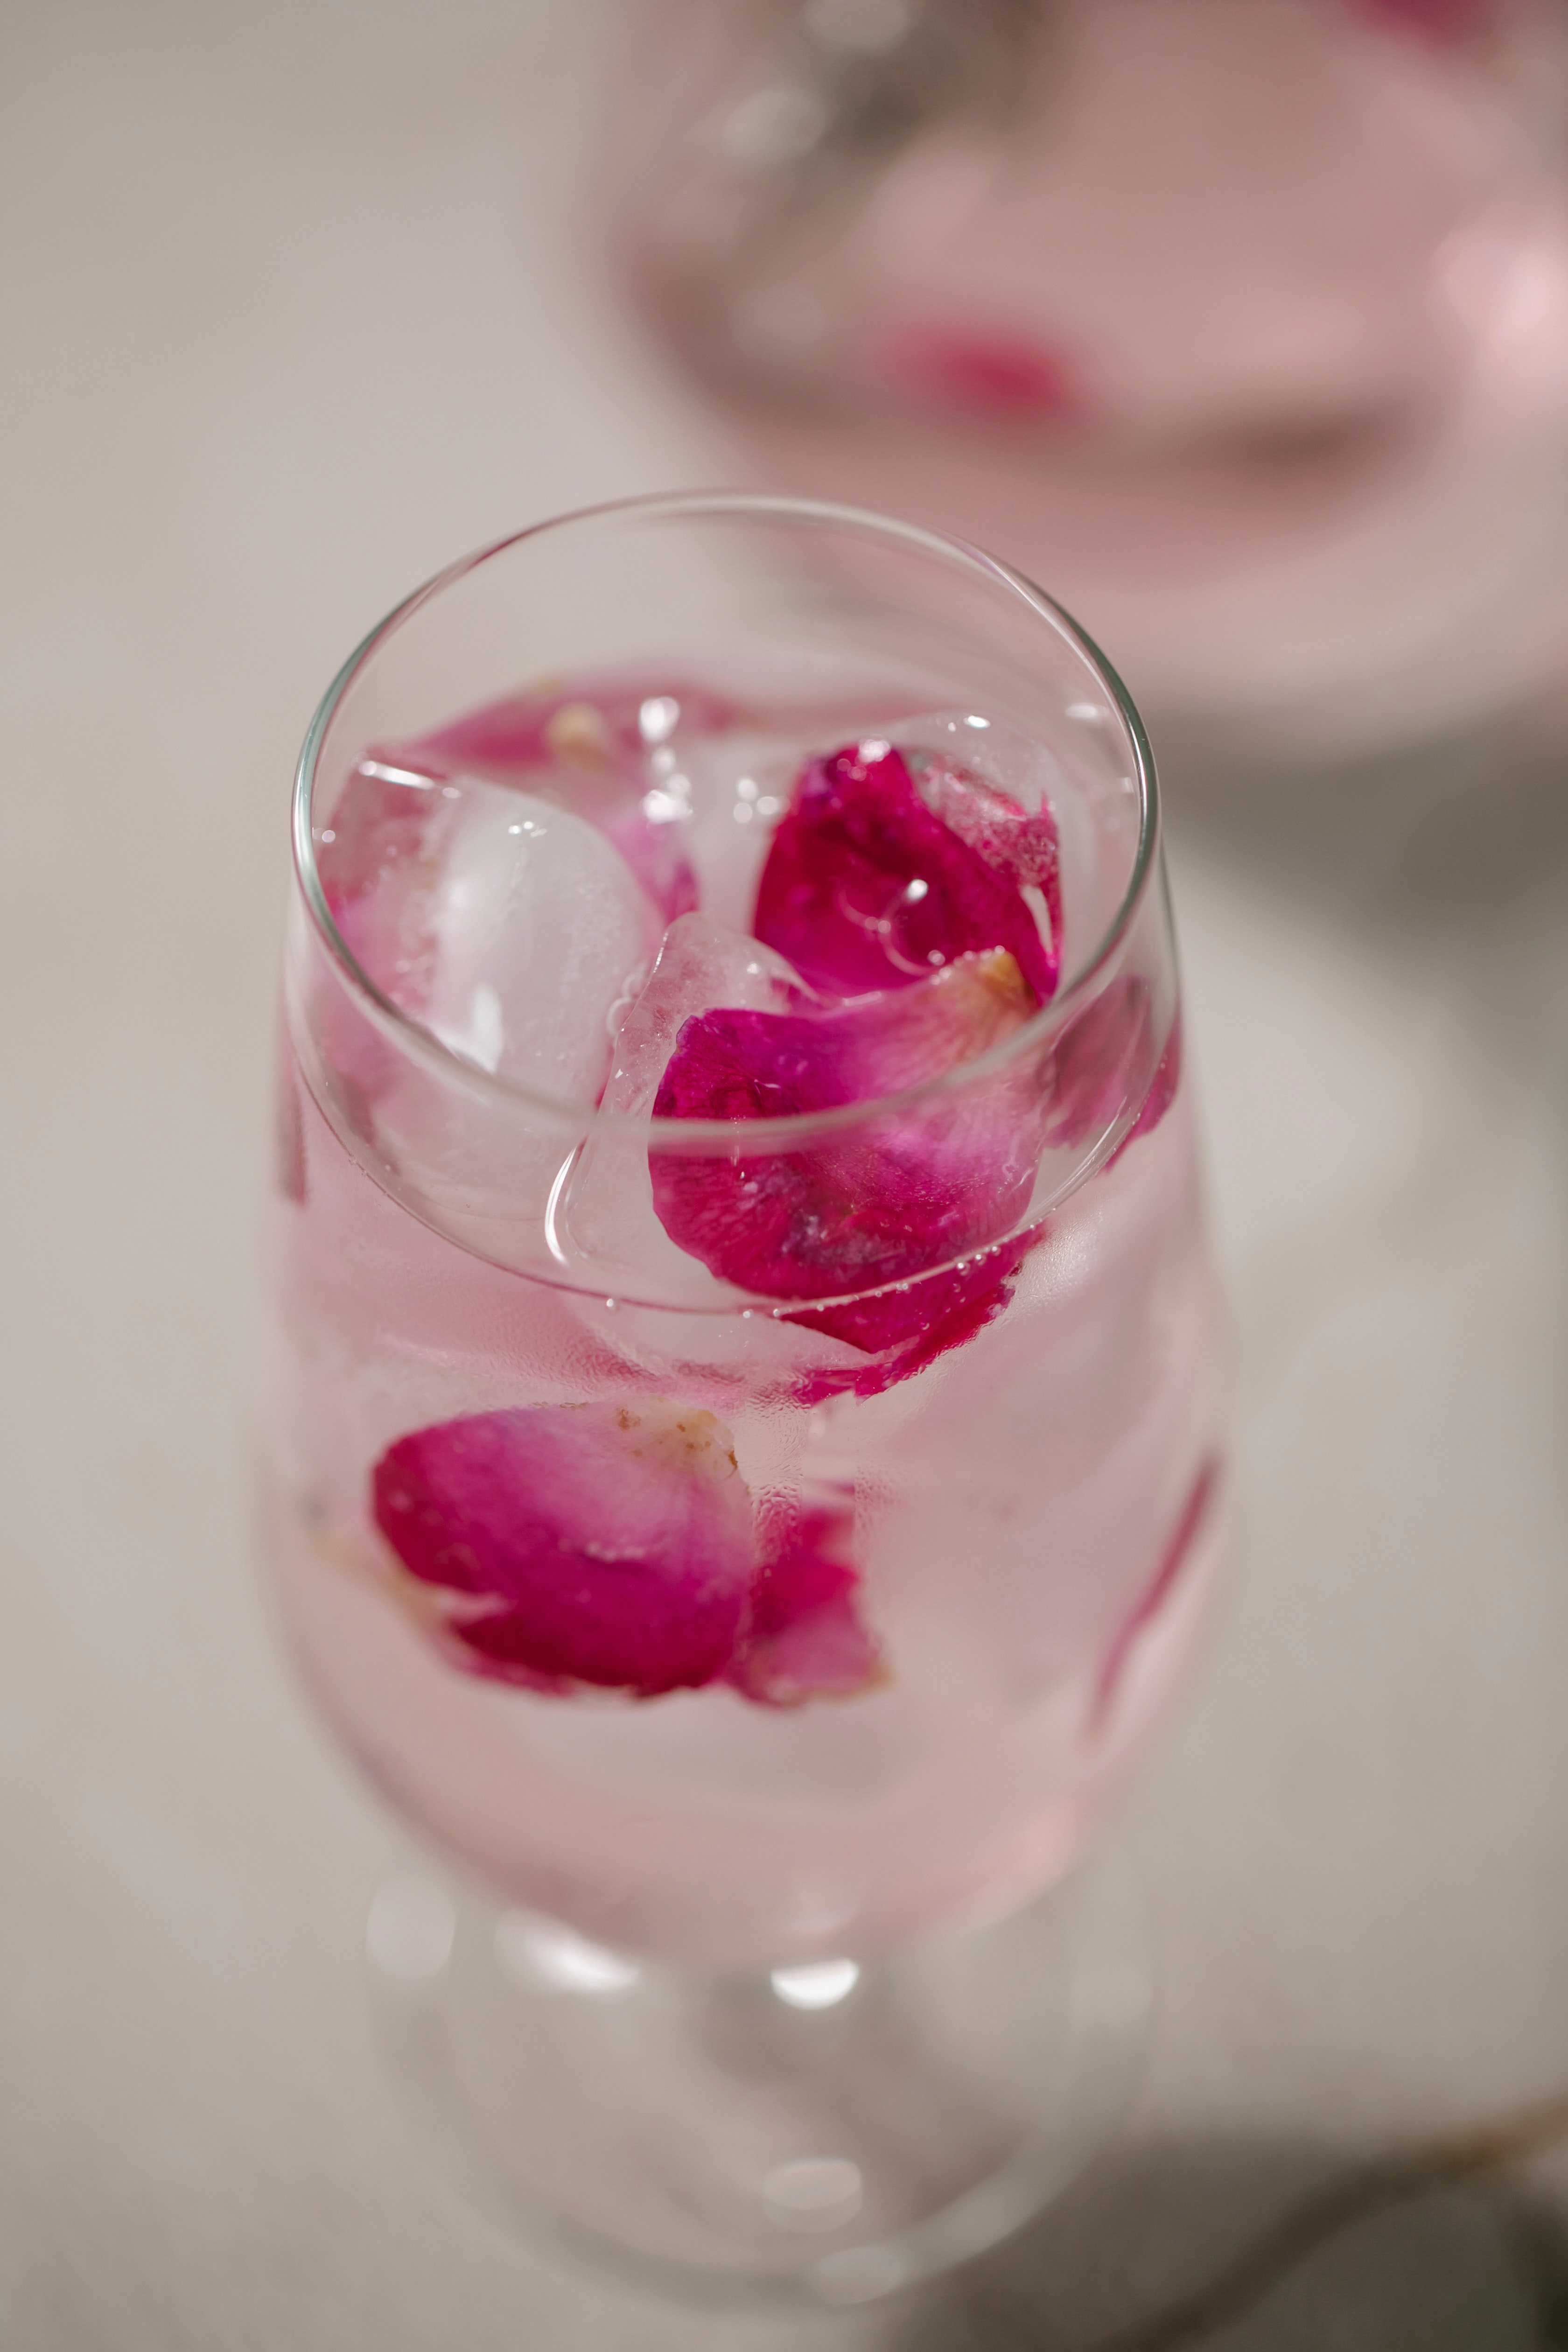 गुलाब पाणी : गुलाब पाण्यामुळे त्वचा चमकदार होण्यास मदत होते. त्वचेत जीवंतपणा येण्यासाठी या पाण्याचा उपयोग होतो.